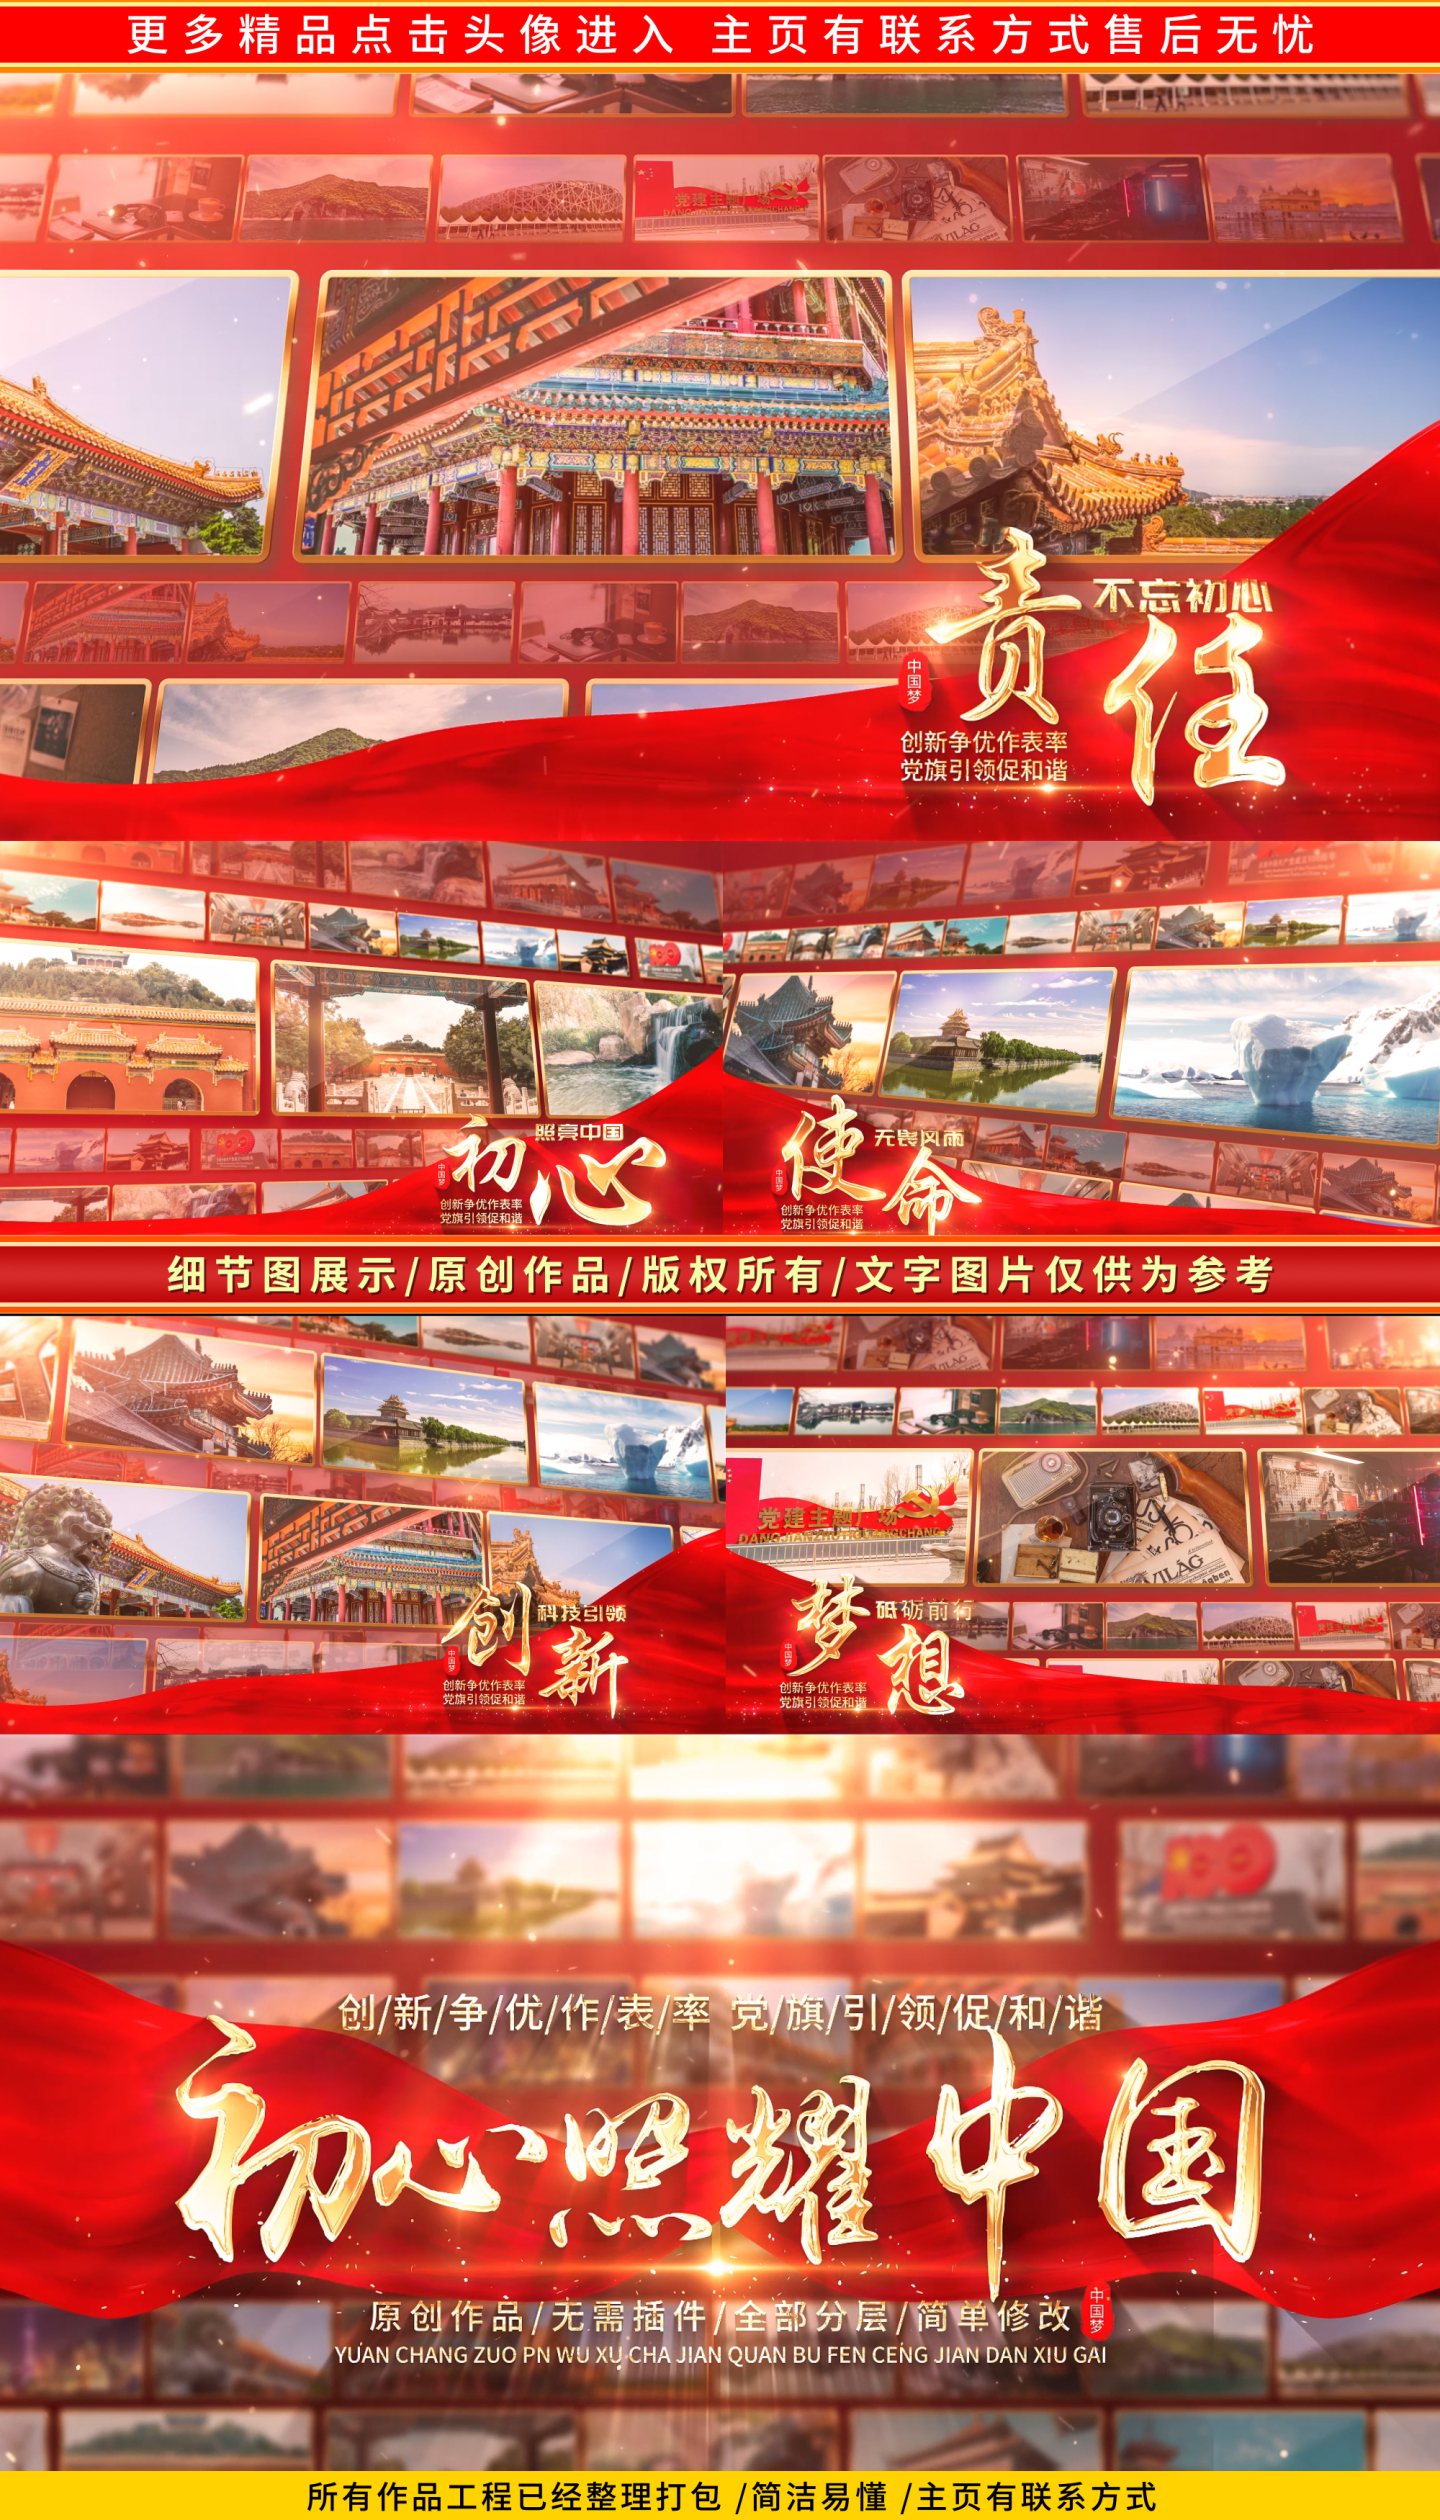 红色党建图文照片墙宣传包装